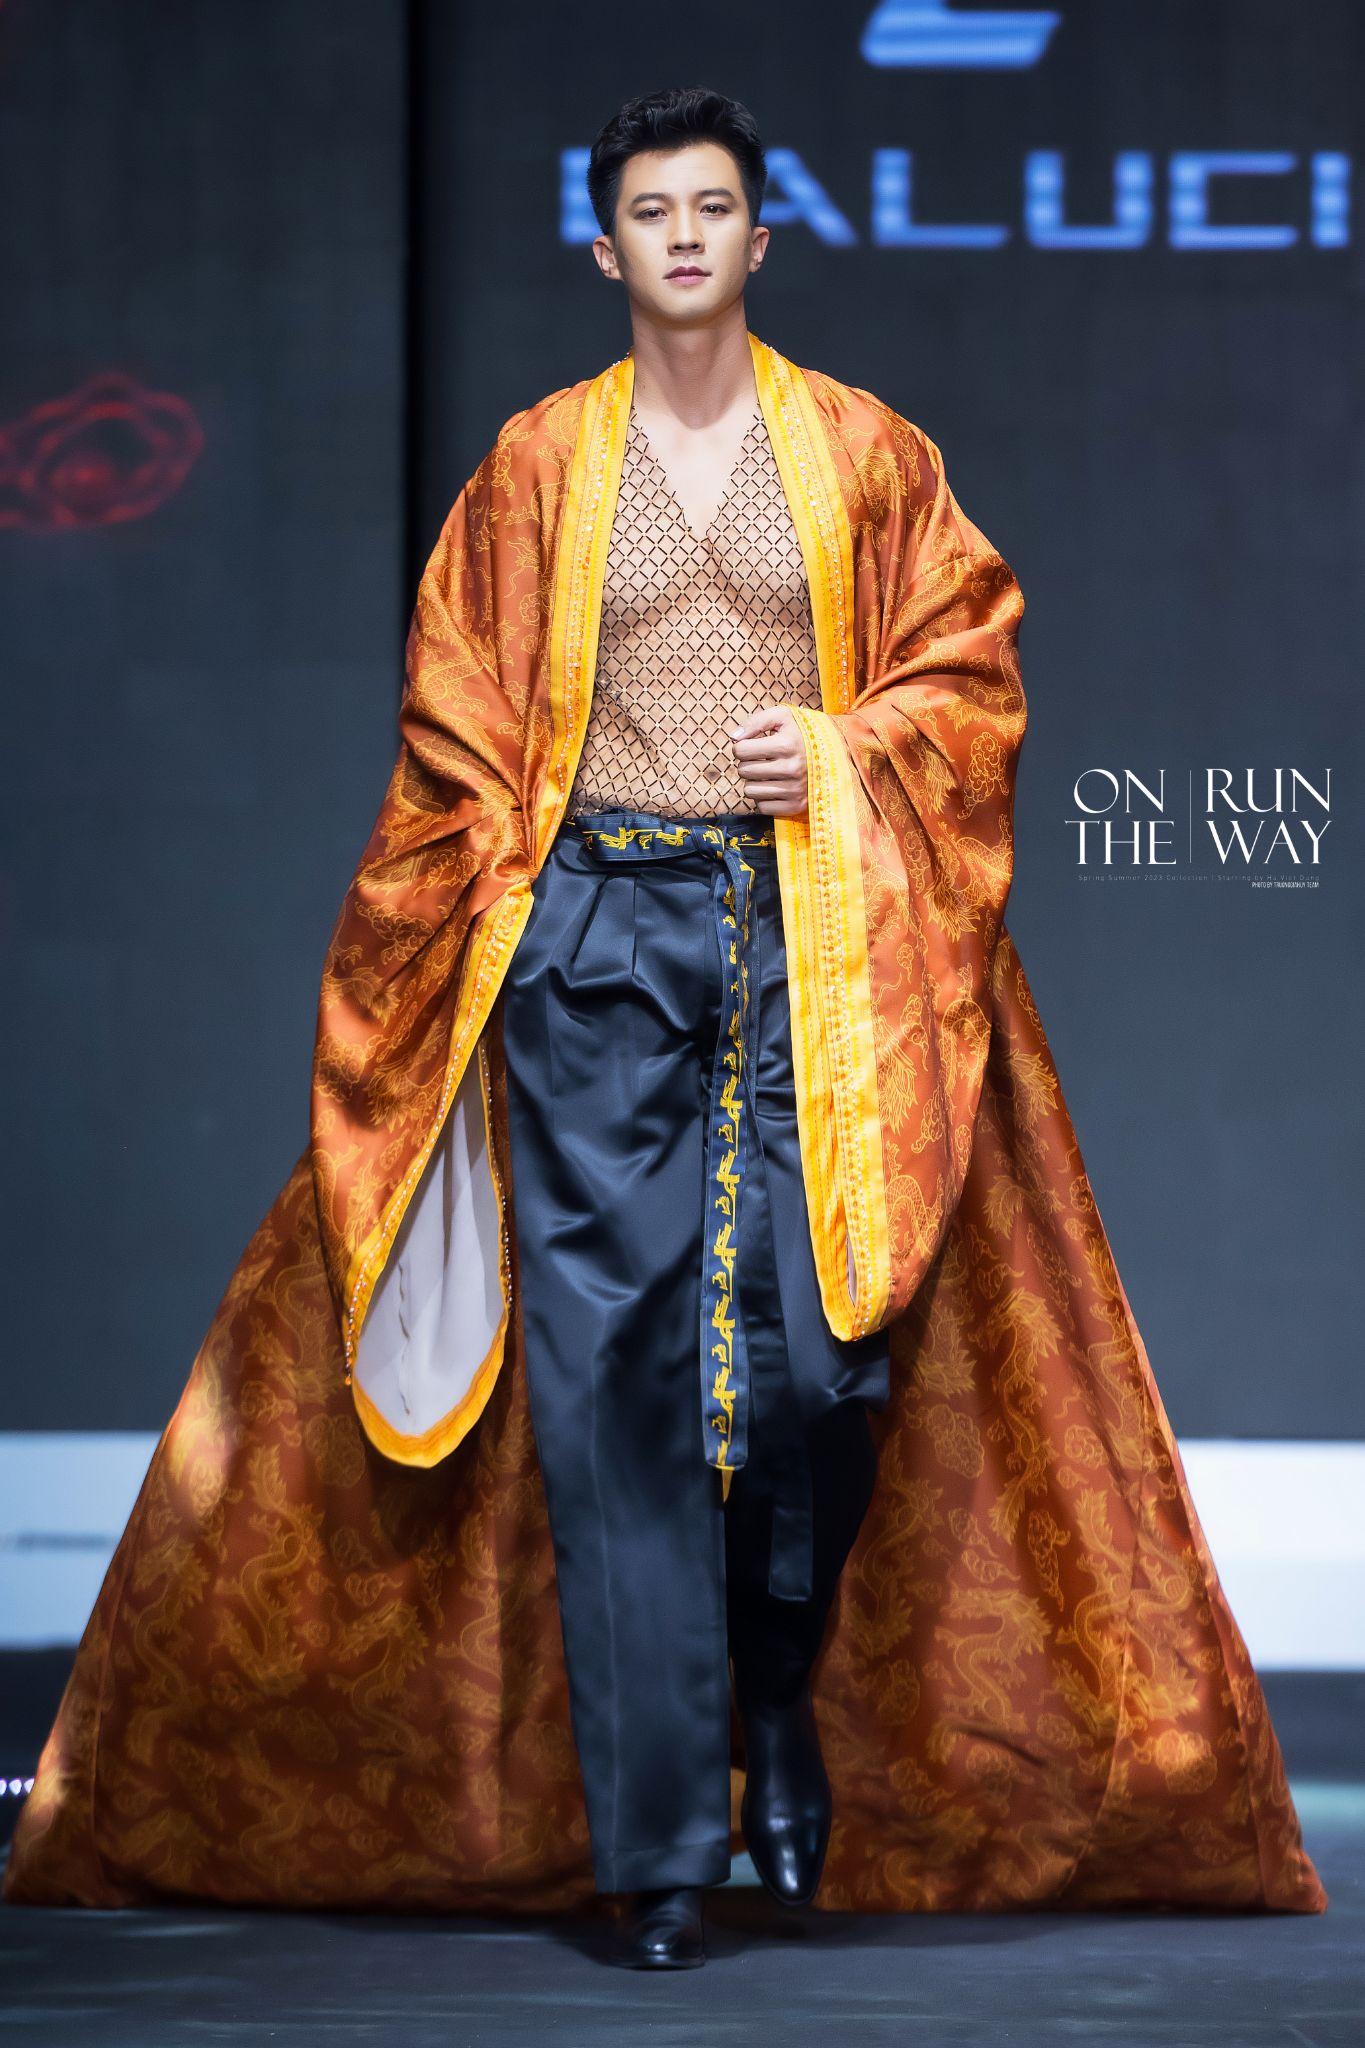 Caluci Fashion Show 2023: Noo Phước Thịnh, Hà Việt Dũng cùng dàn mẫu nam khuấy động tại Trung tâm Hội nghị Quốc gia - Ảnh 6.